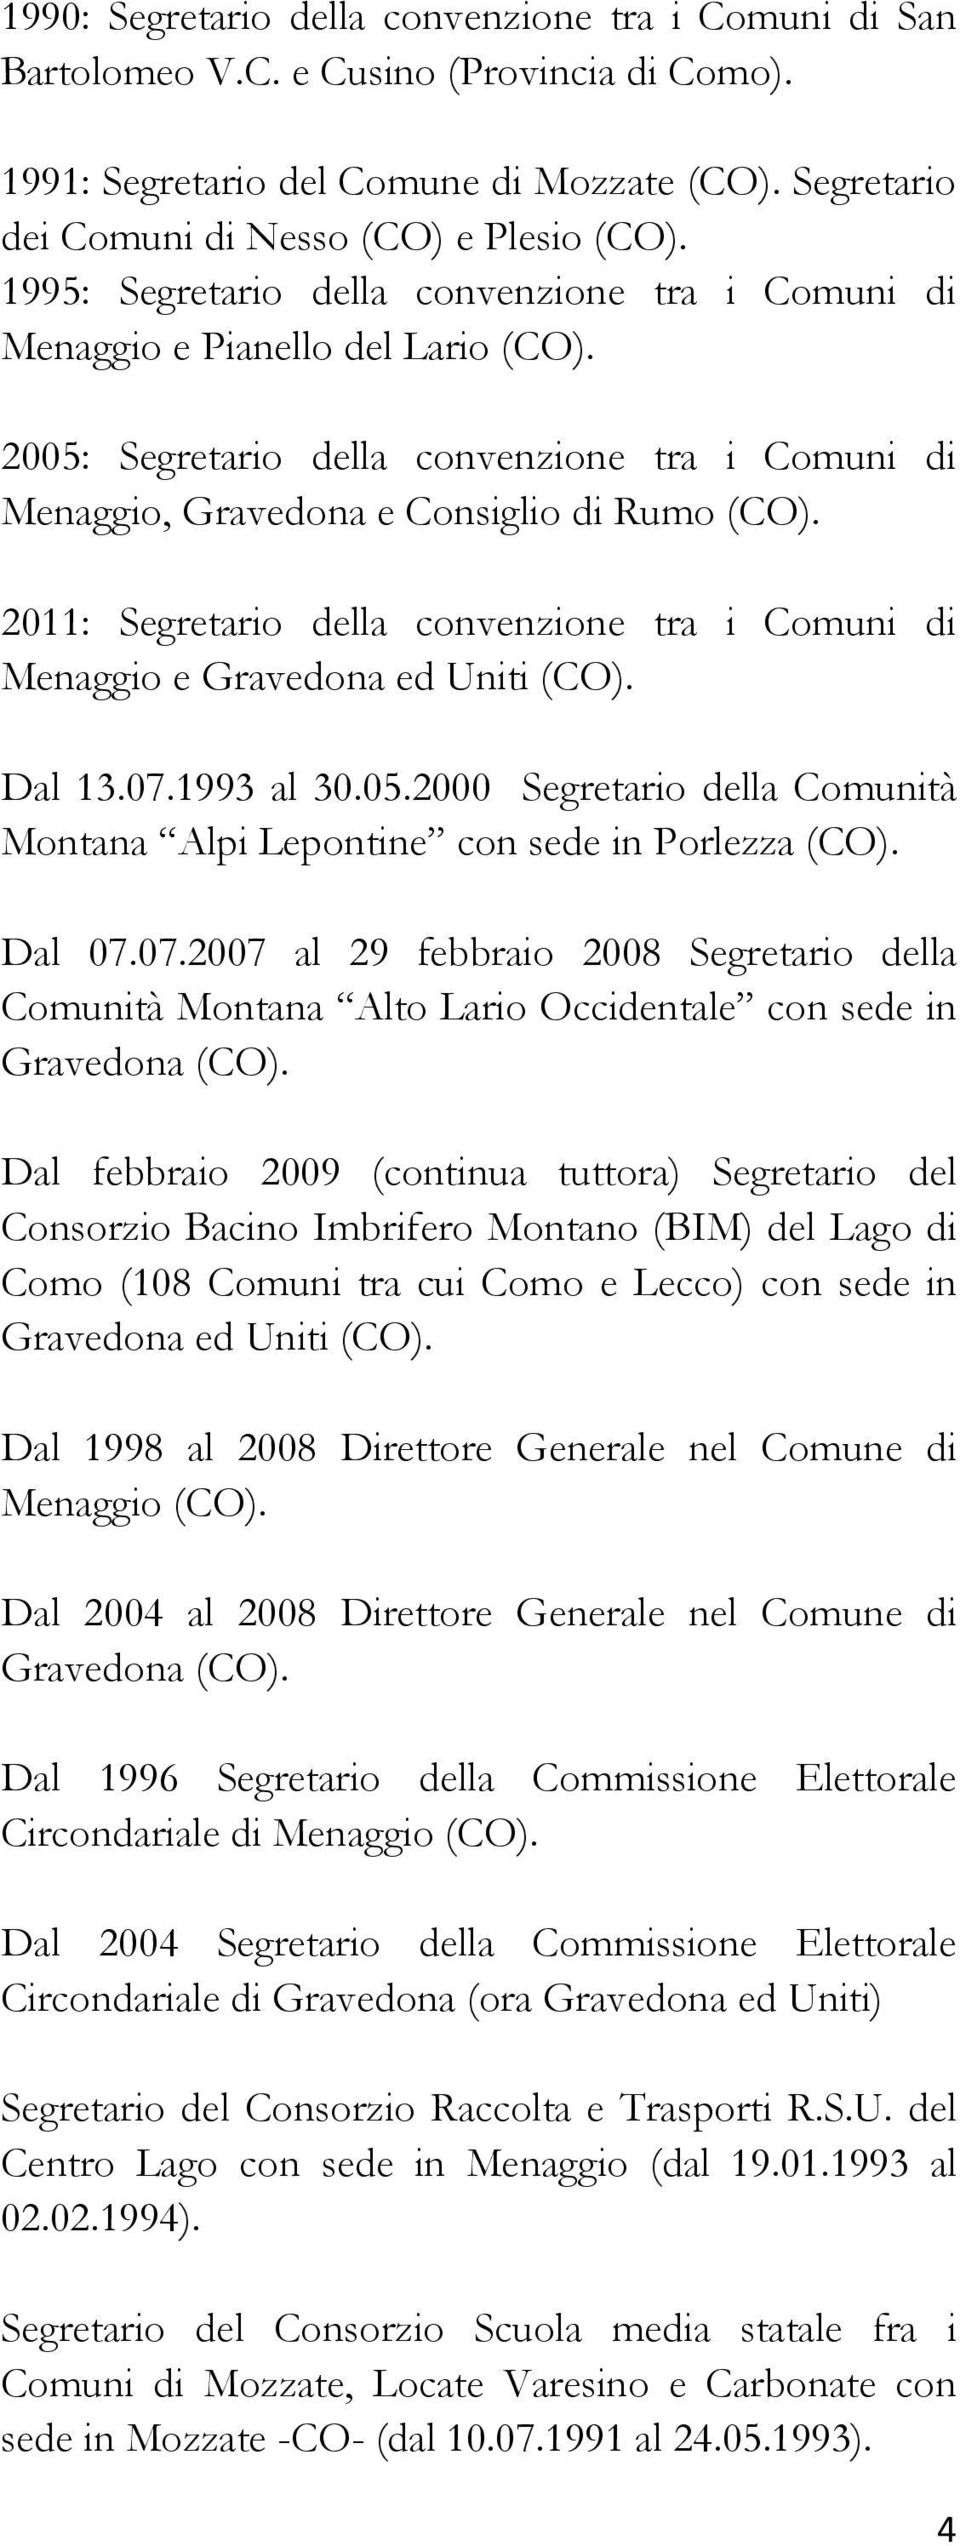 2011: Segretario della convenzione tra i Comuni di Menaggio e Gravedona ed Uniti (CO). Dal 13.07.1993 al 30.05.2000 Segretario della Comunità Montana Alpi Lepontine con sede in Porlezza (CO). Dal 07.